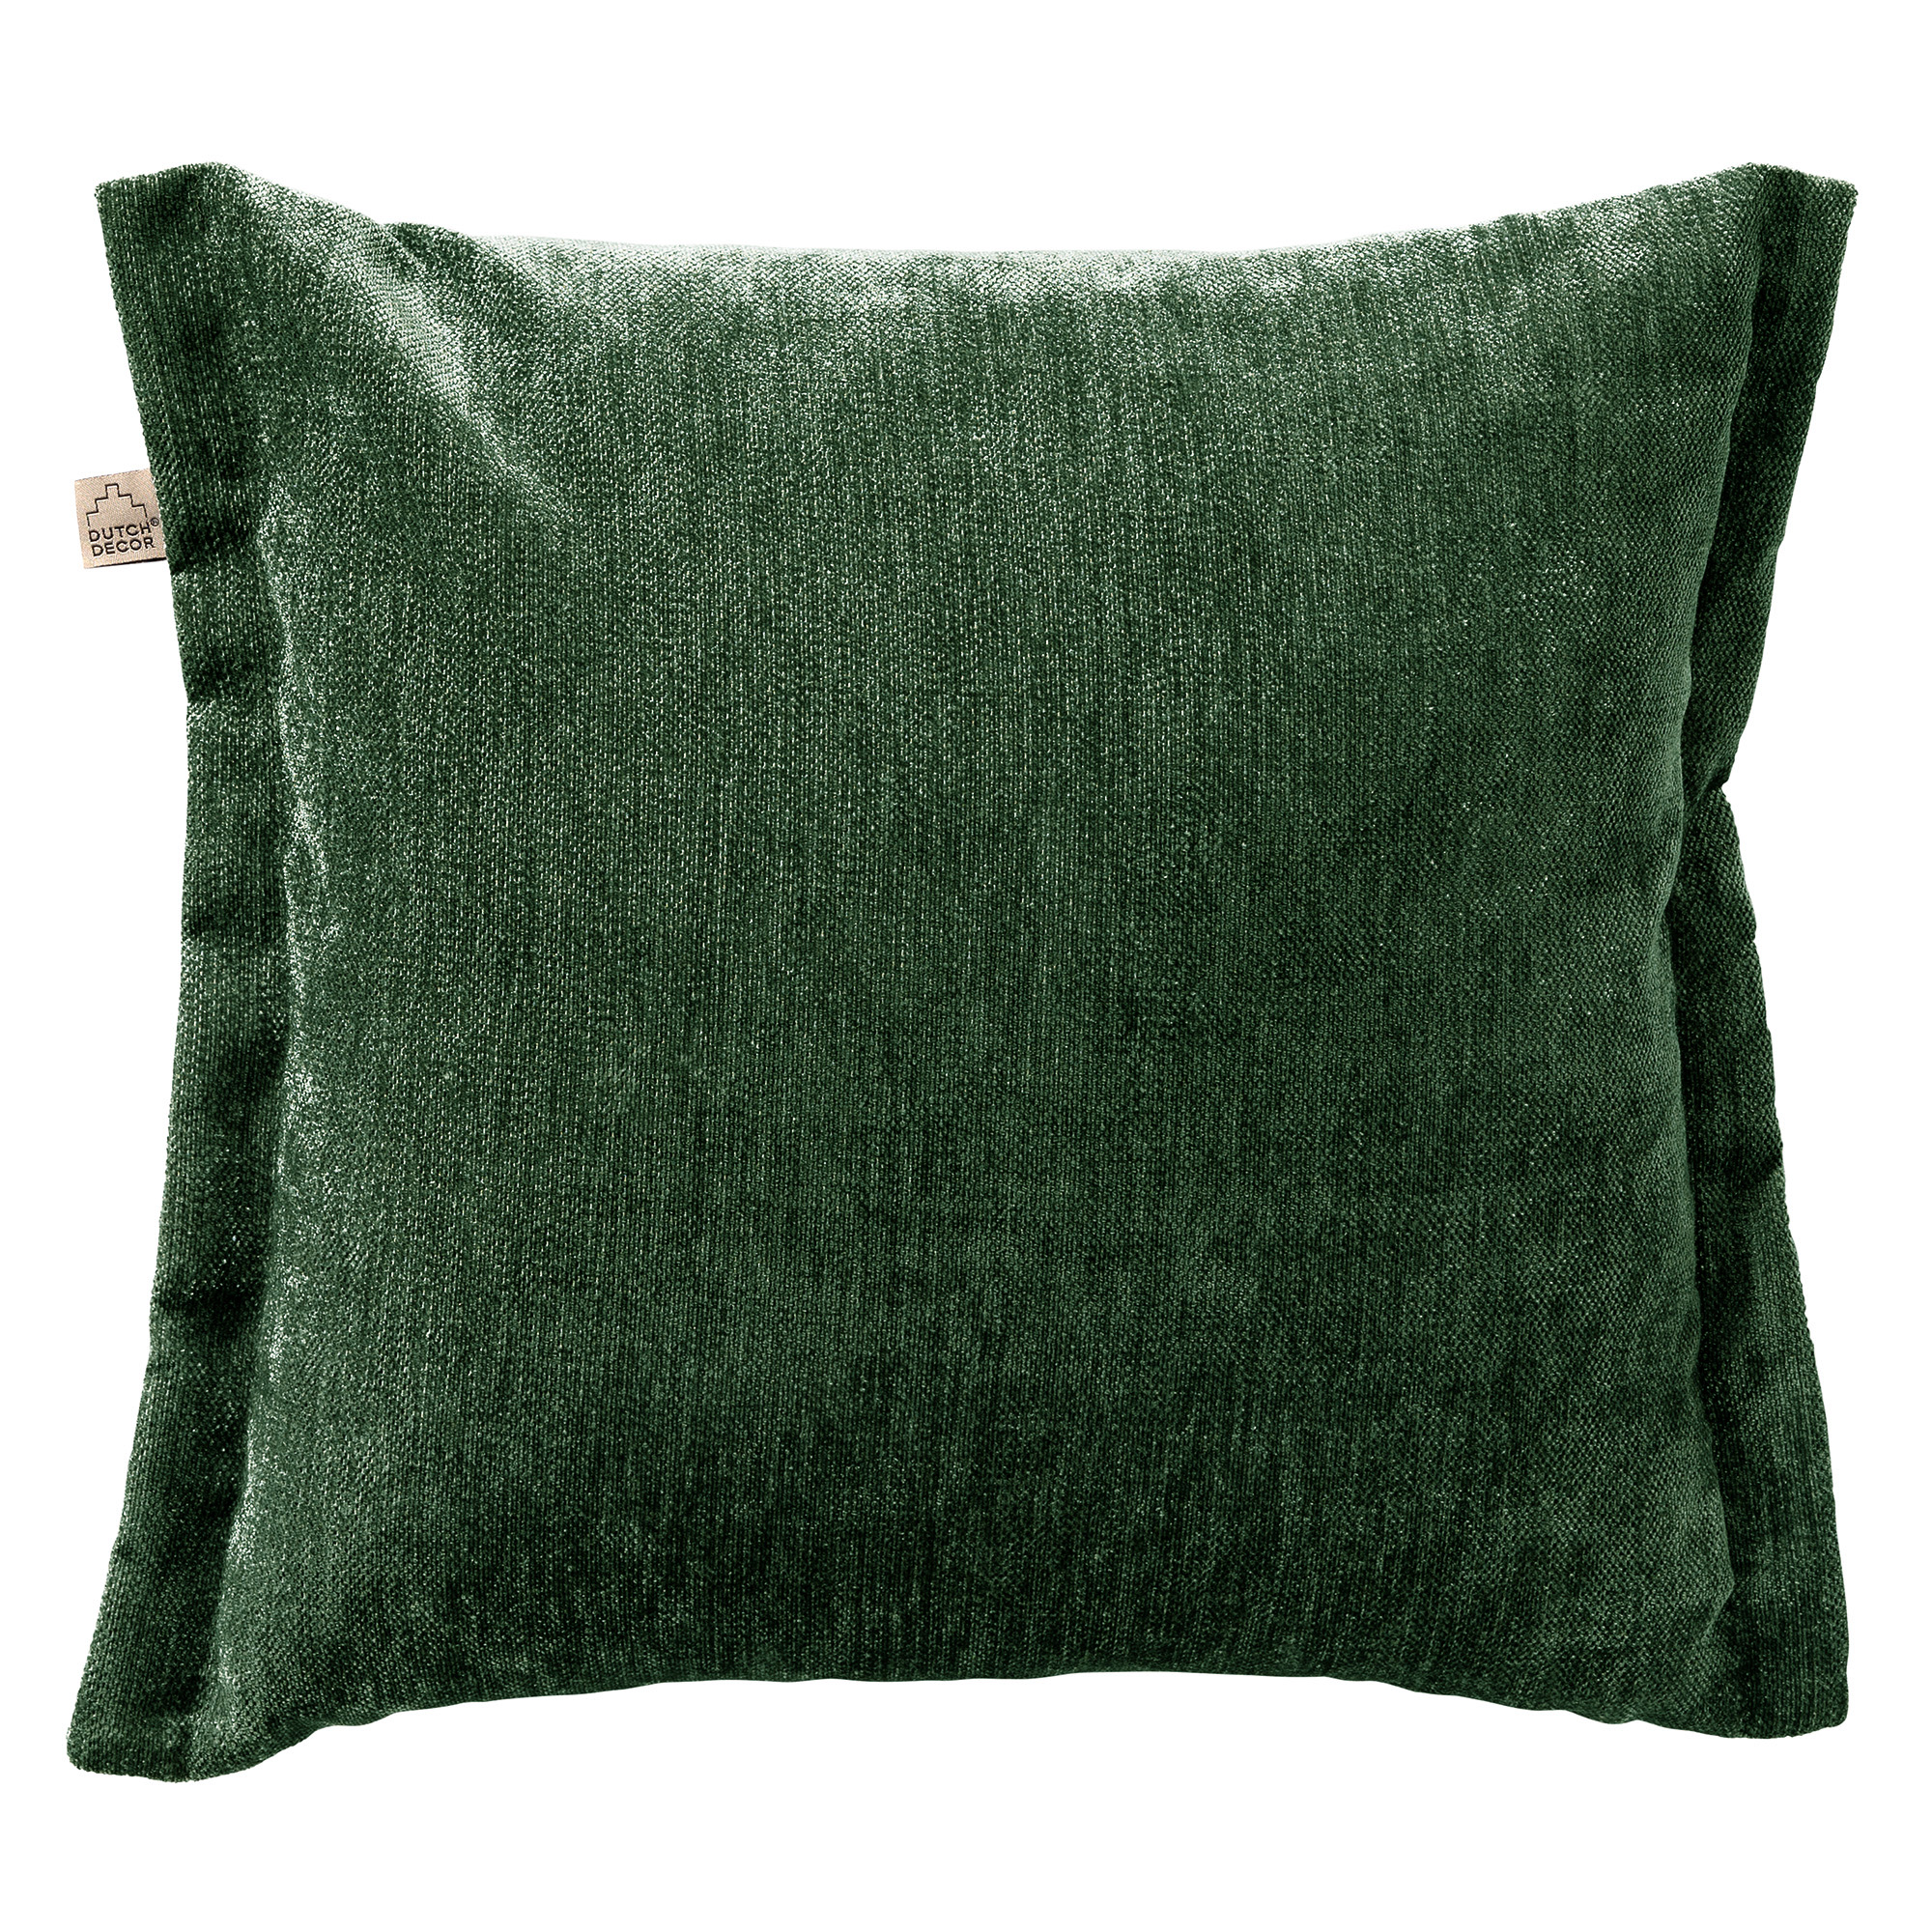 LEWIS - Cushion cover 45x45 cm - Mountain View - green